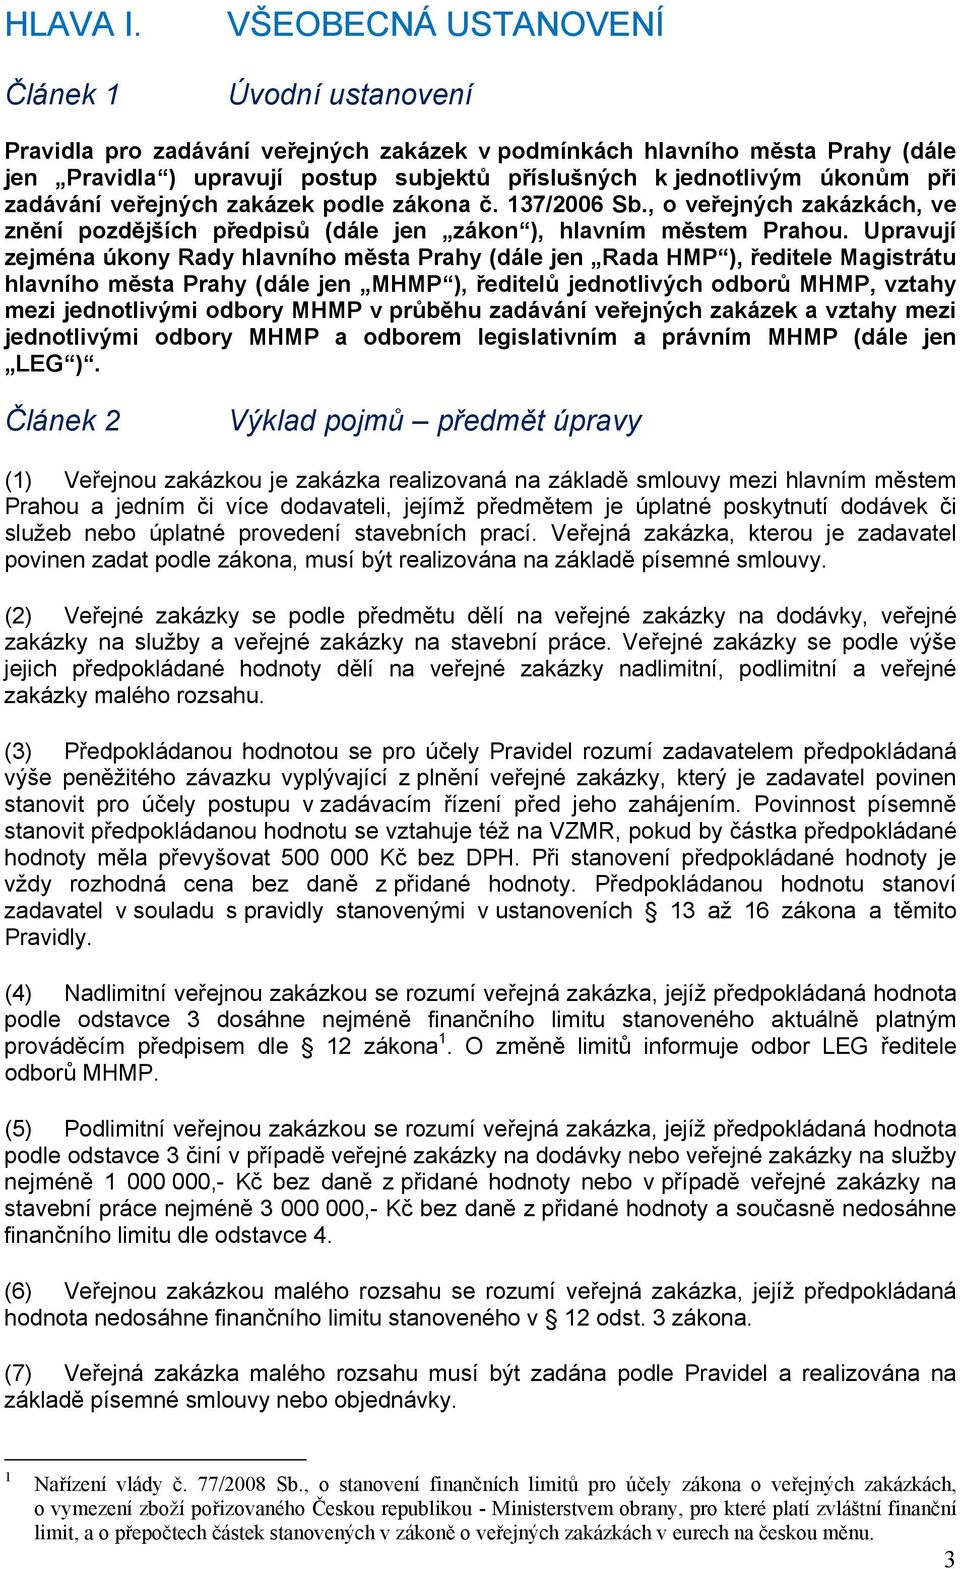 úkonům při zadávání veřejných zakázek podle zákona č. 137/2006 Sb., o veřejných zakázkách, ve znění pozdějších předpisů (dále jen zákon ), hlavním městem Prahou.